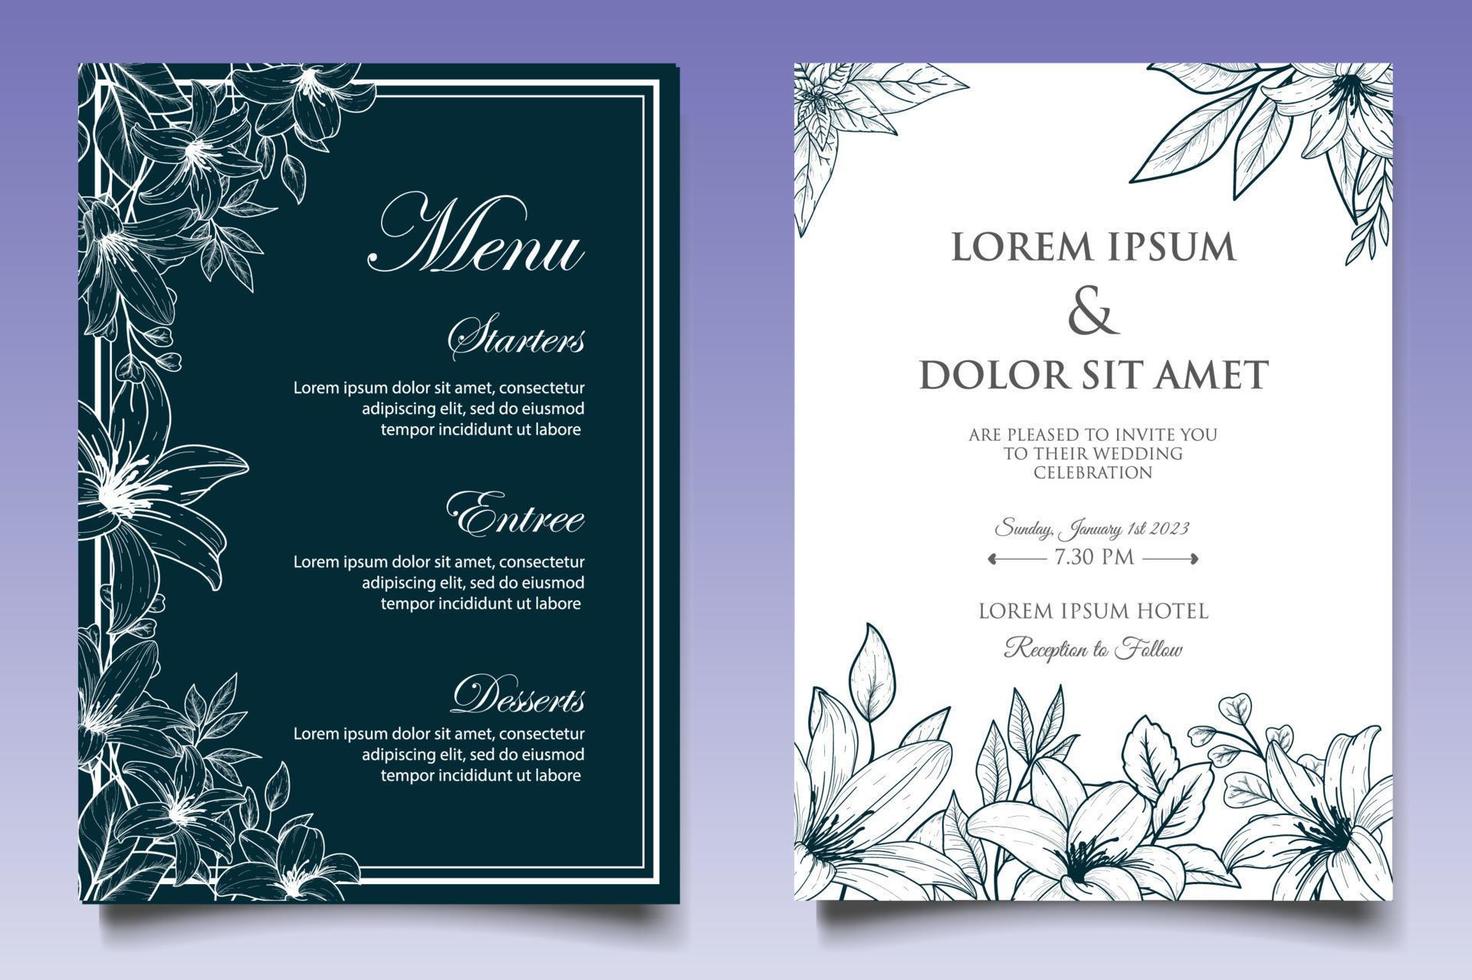 Elegant Vintage Floral Wedding Invitation Card Set vector